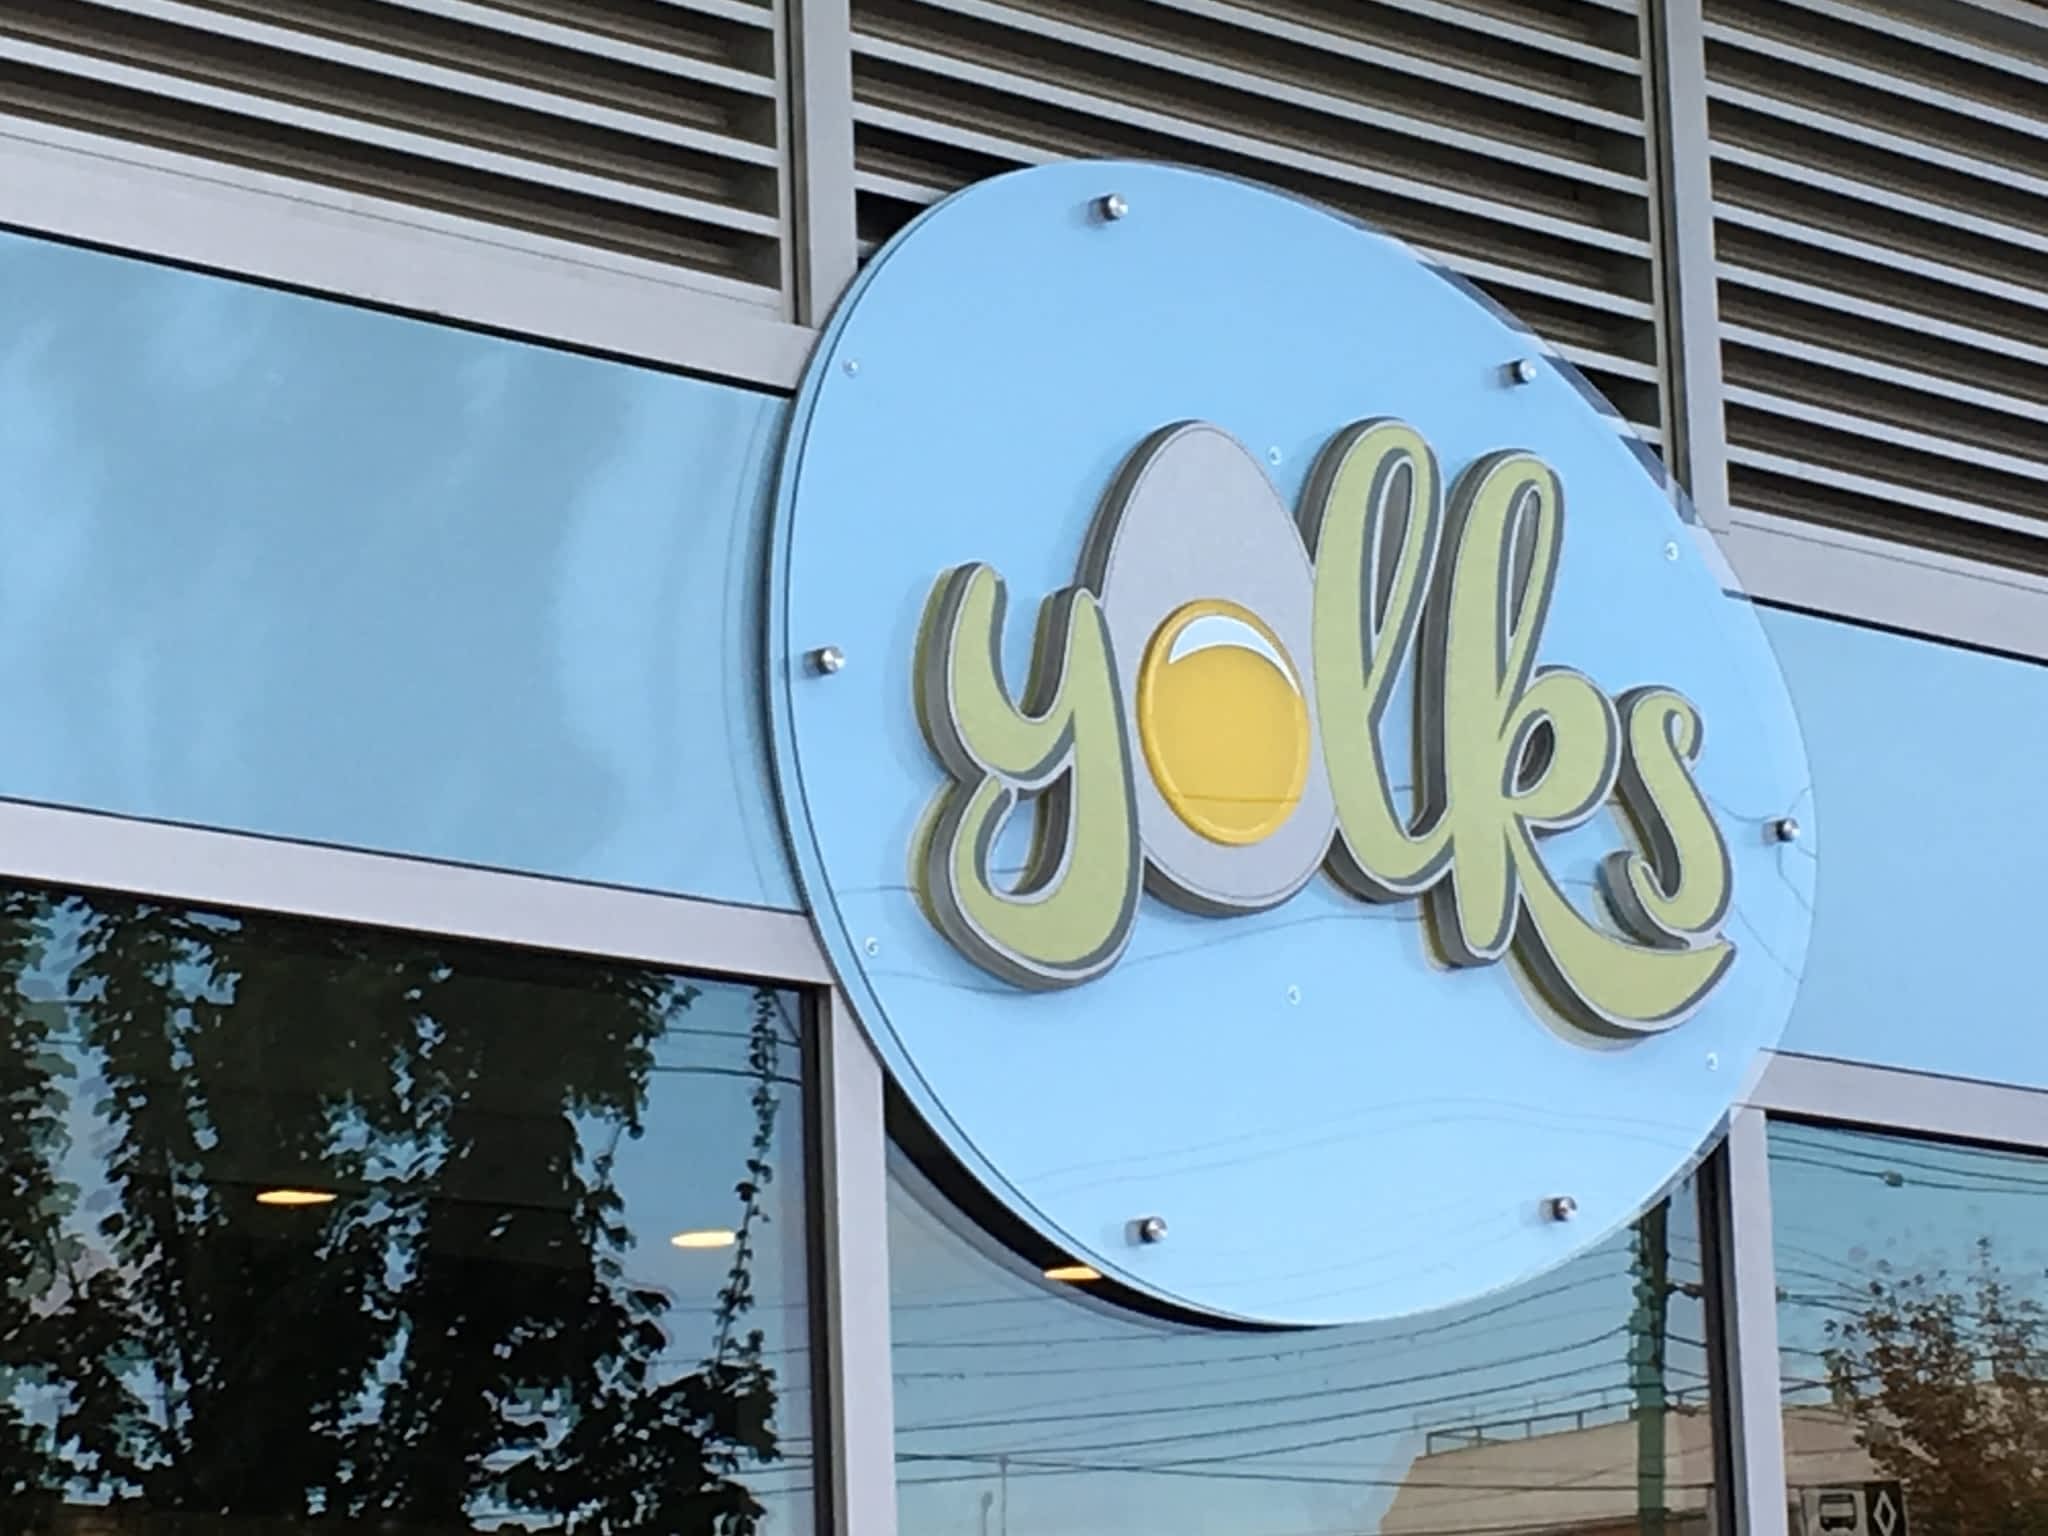 photo Yolks Restaurant